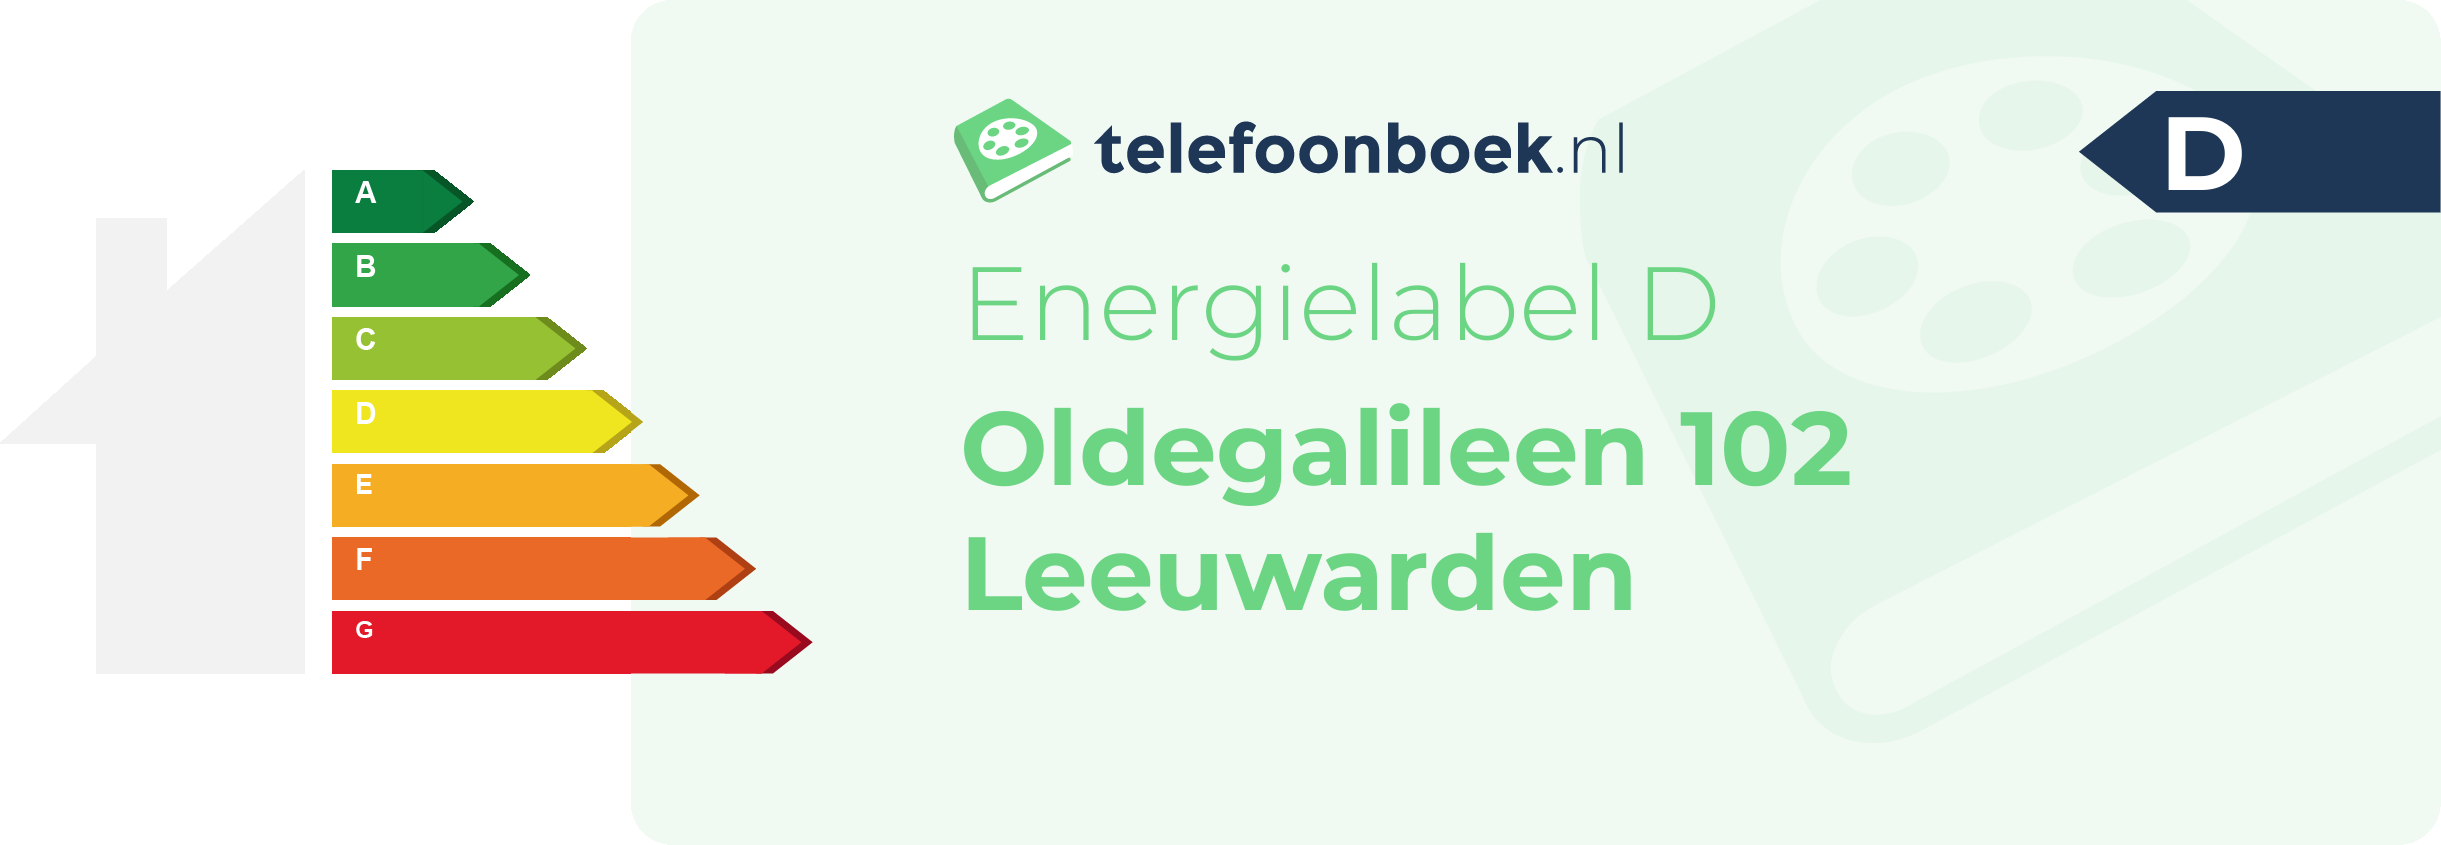 Energielabel Oldegalileen 102 Leeuwarden